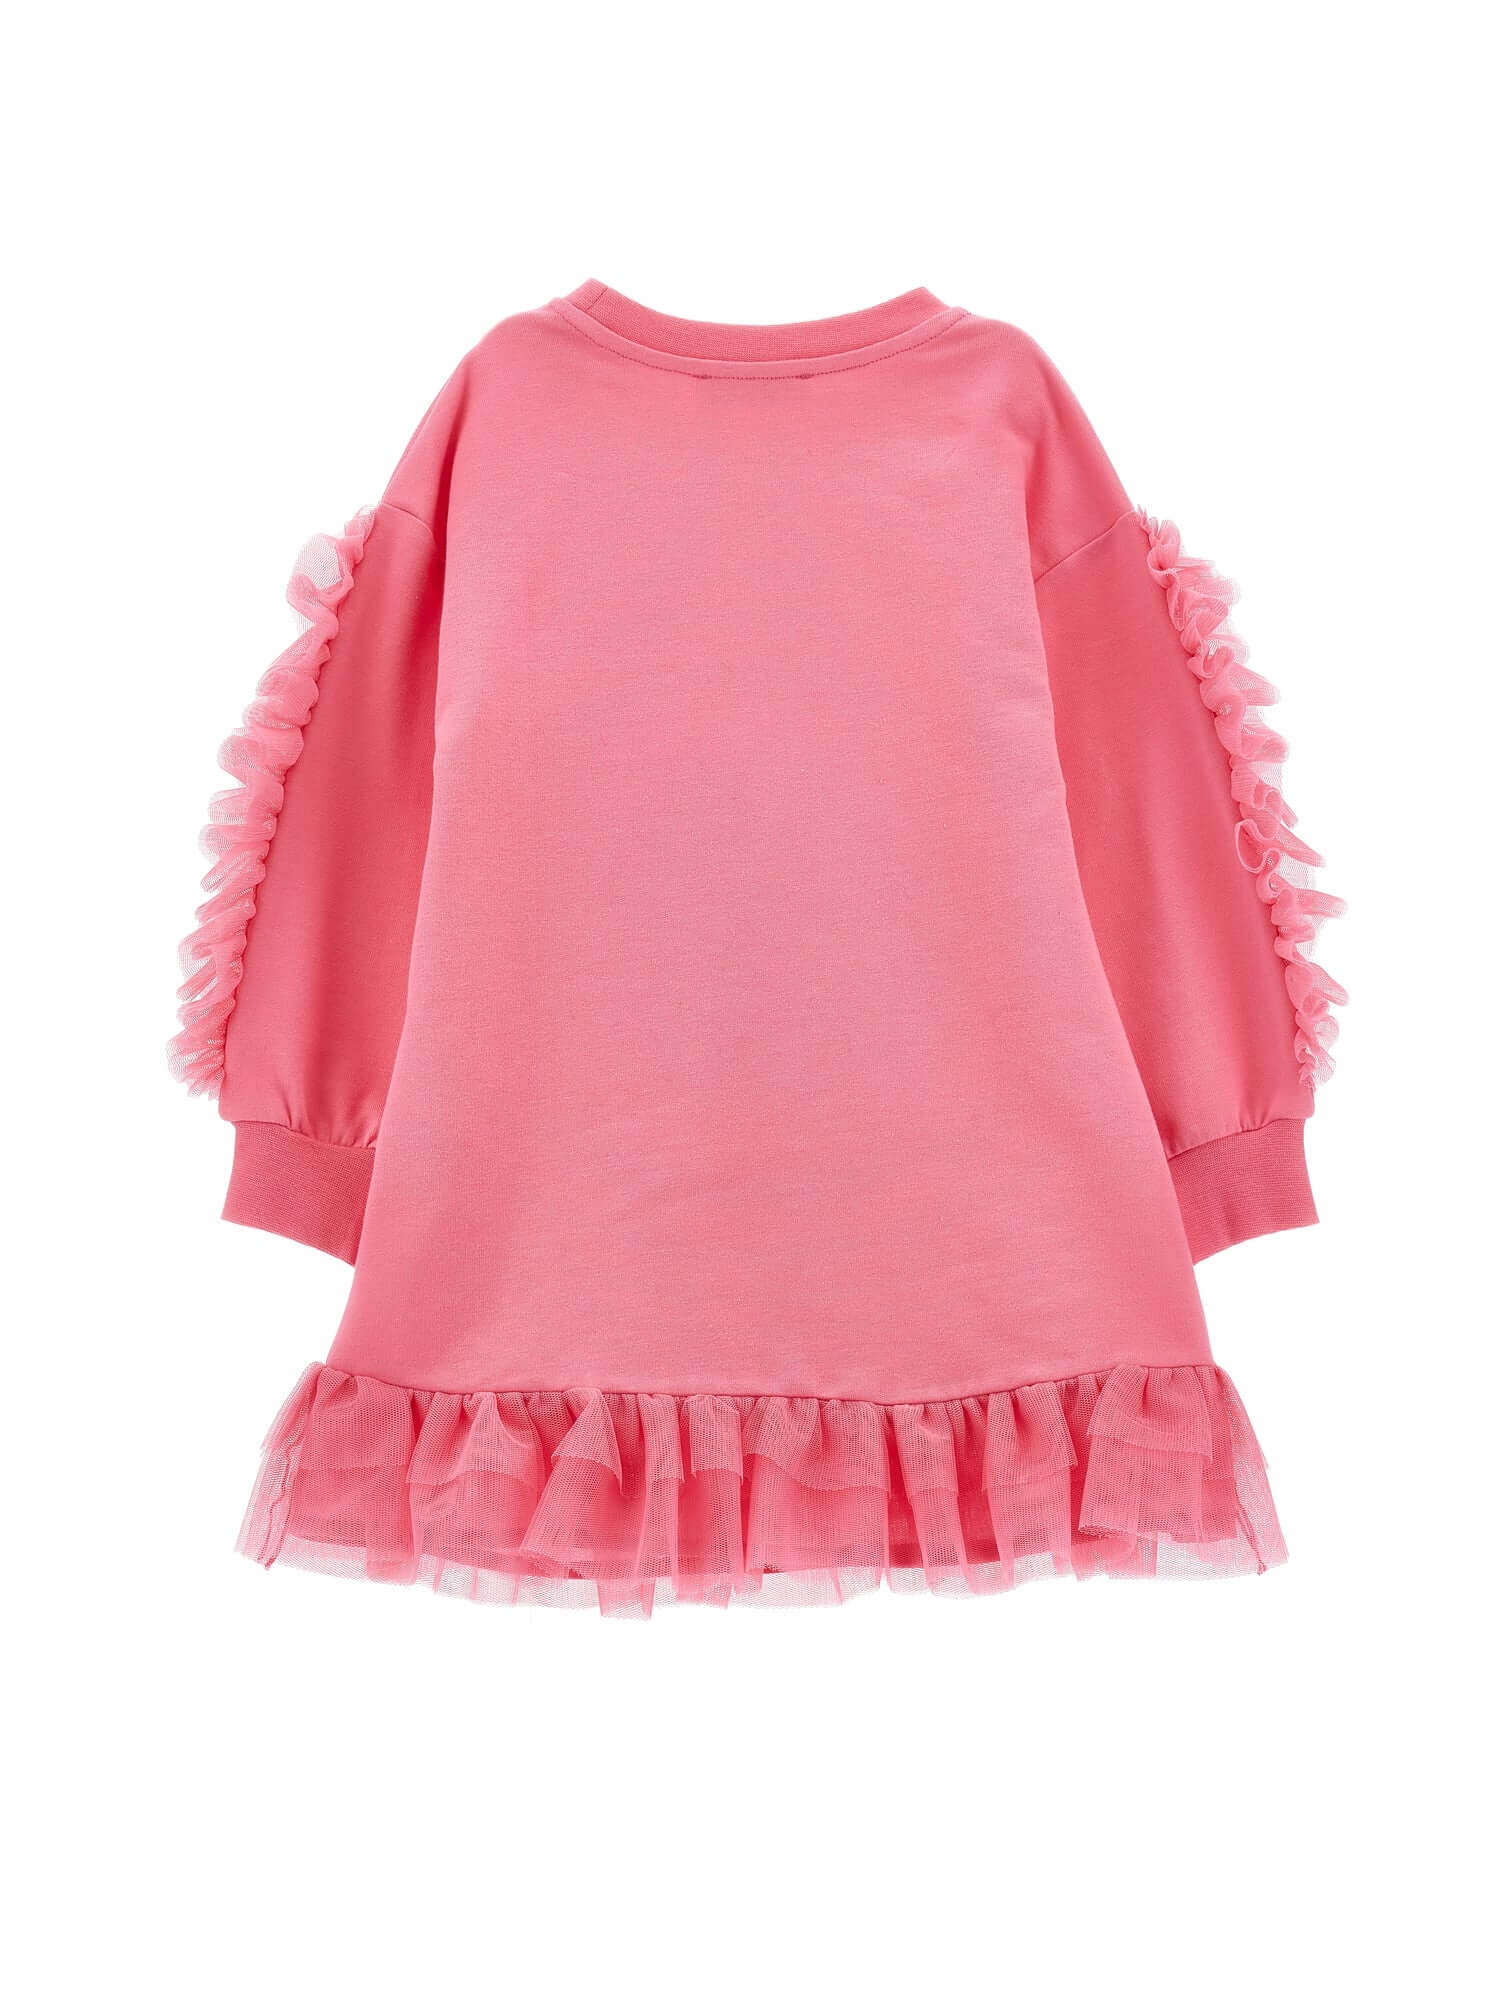 Monnalisa Girls Pink Flower Frill Dress